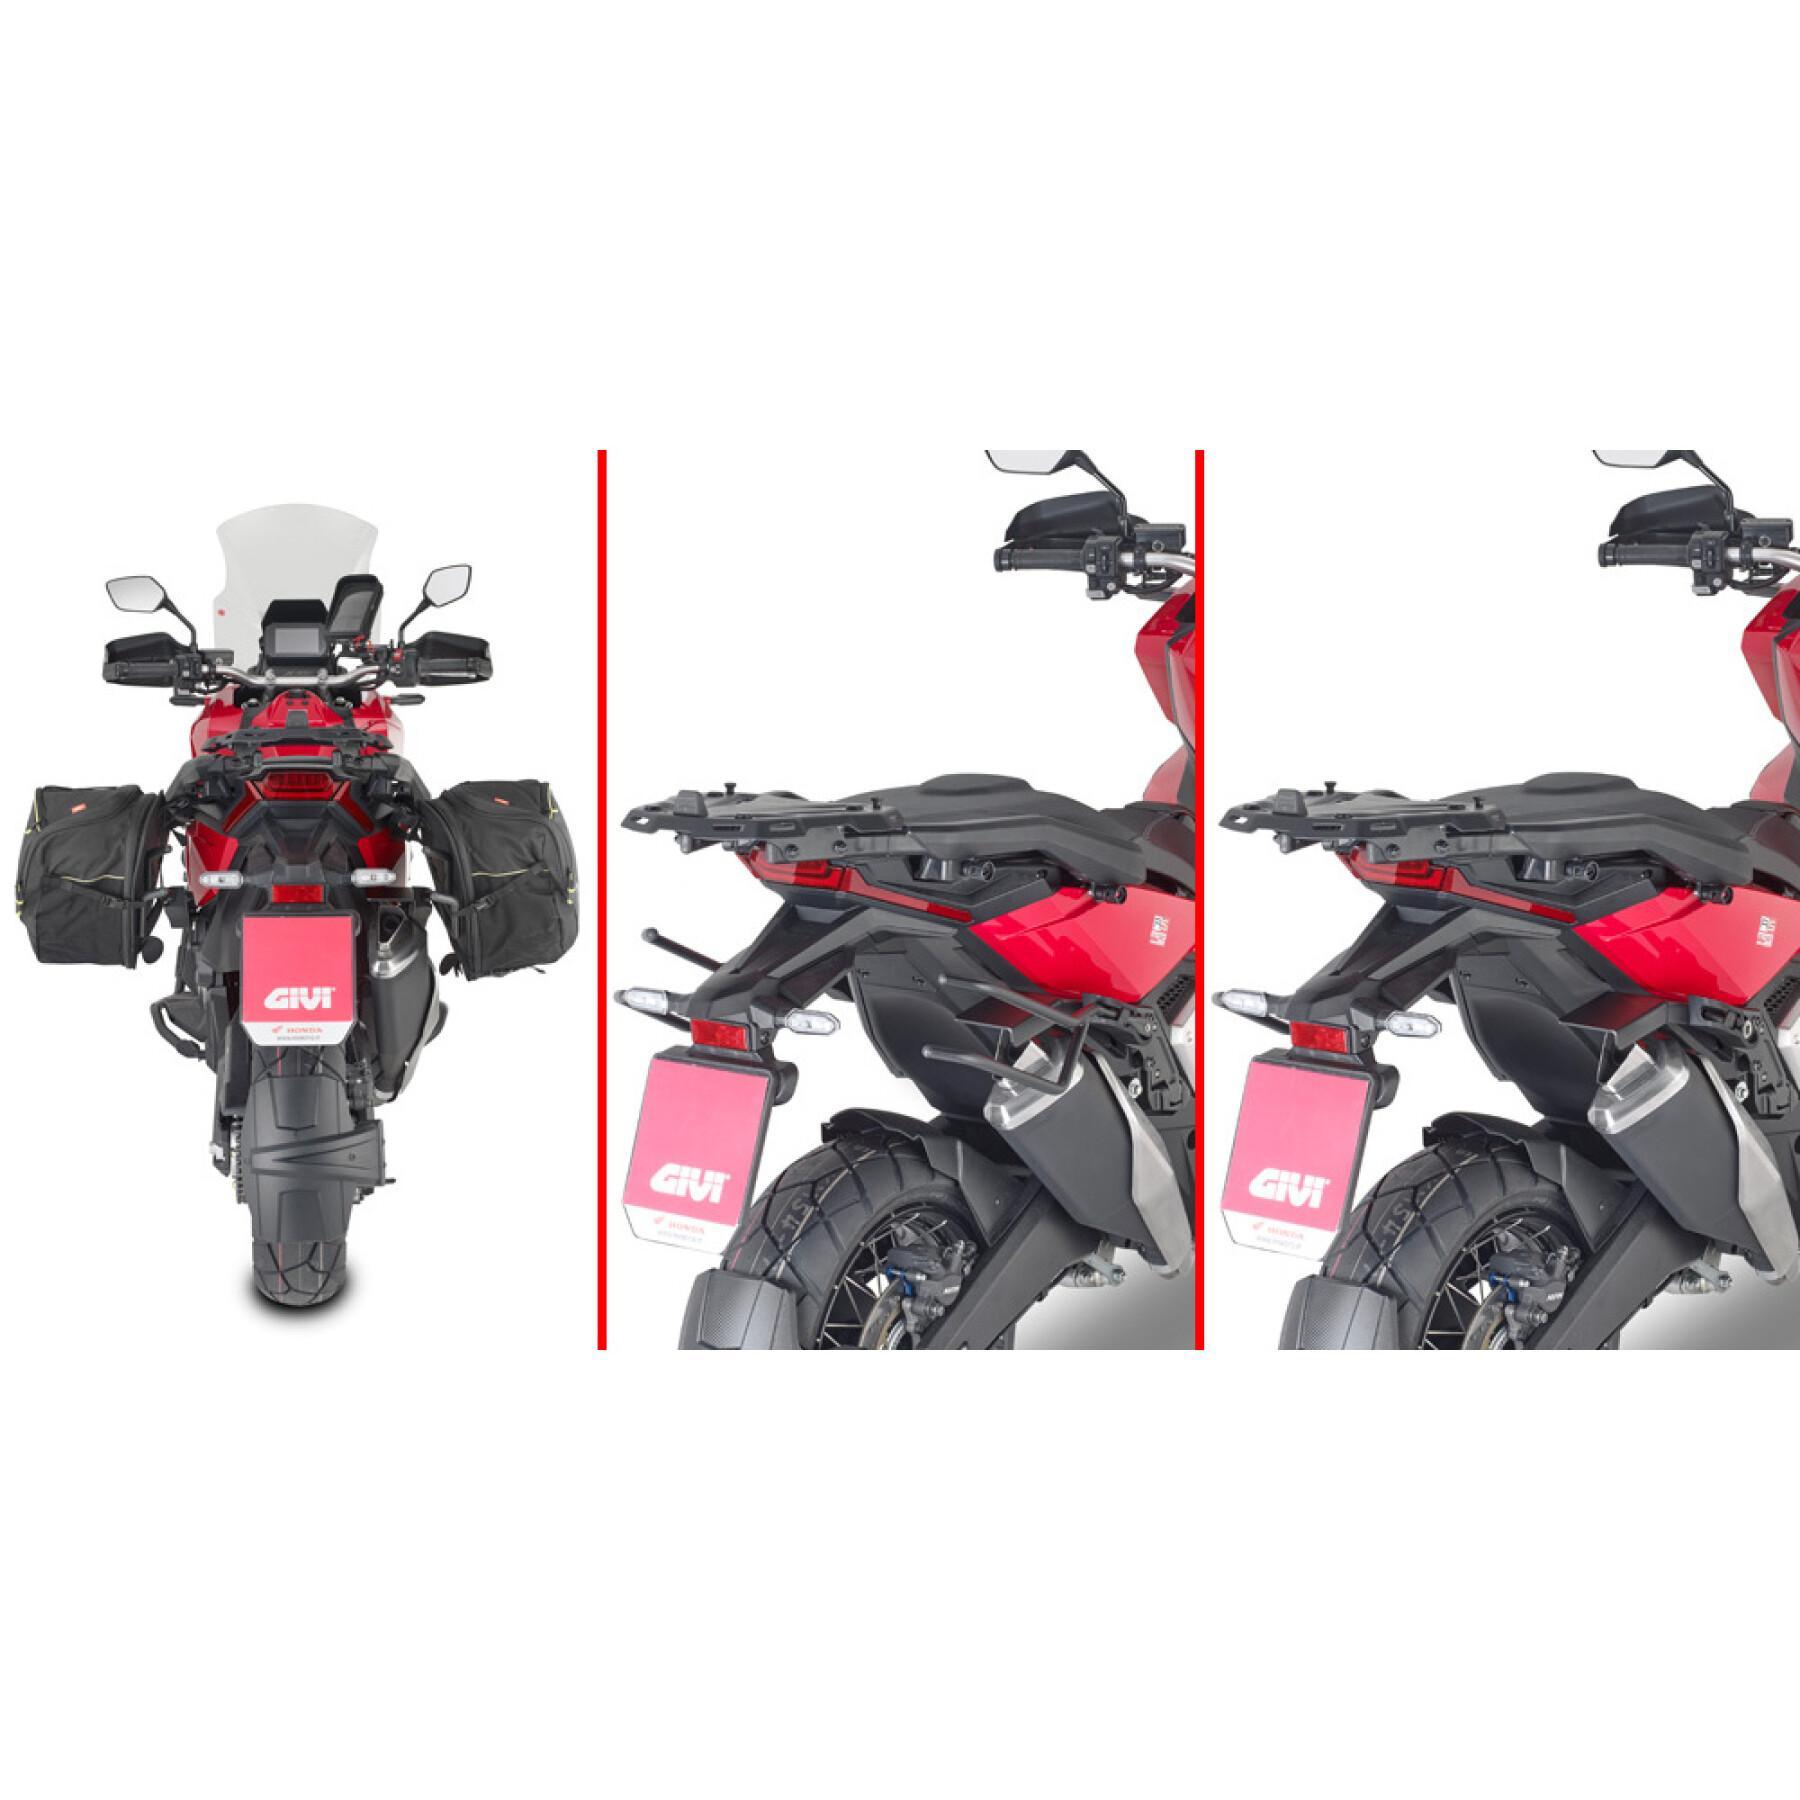 Supporto bauletto moto Givi Honda X-ADV 750 (21)